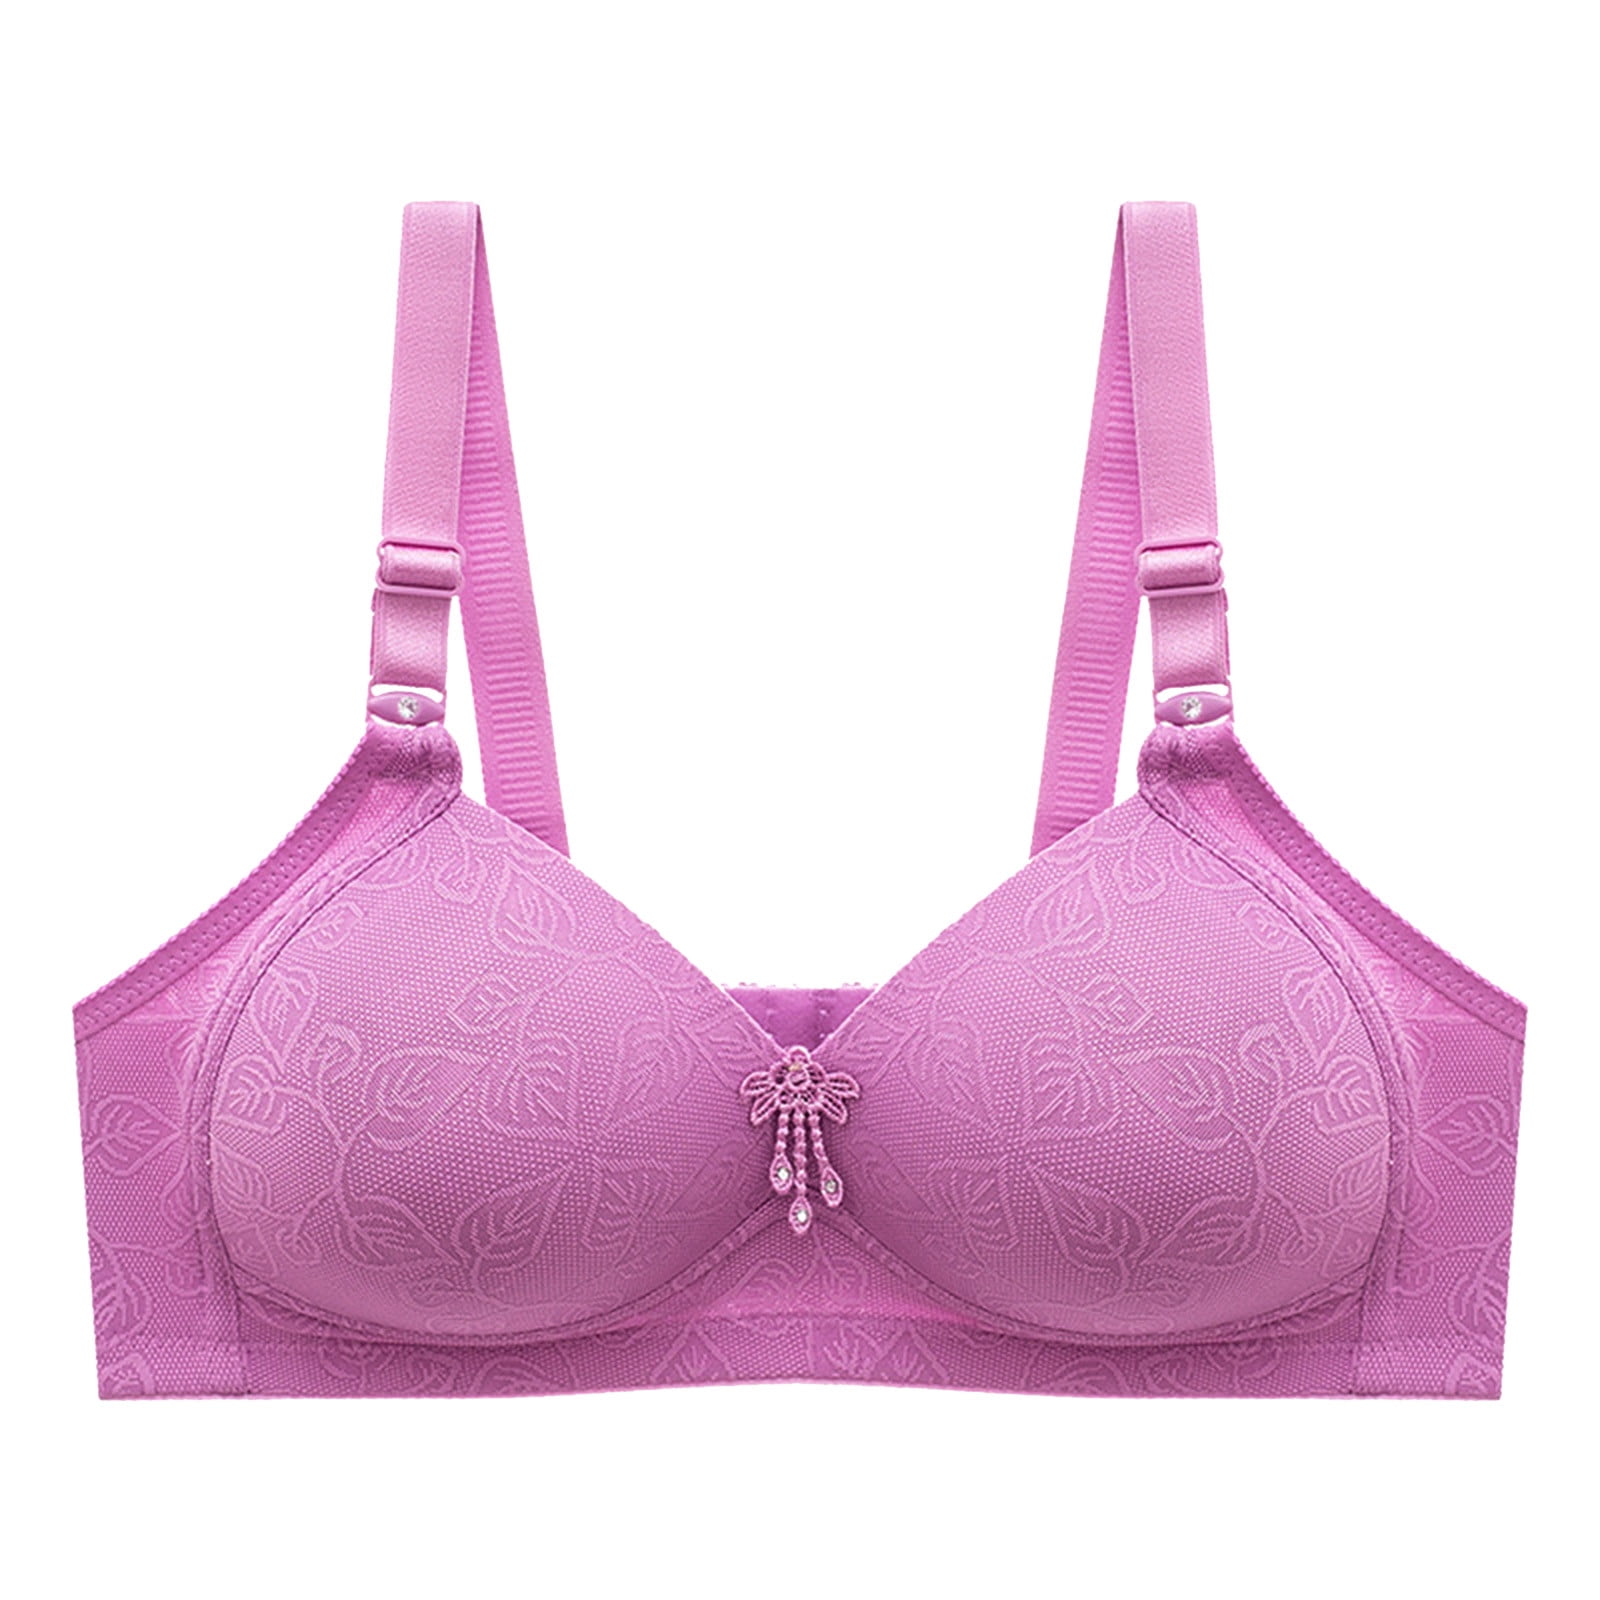 BNWT Pink/ LavenderAerie Soft, Underwire Bra Size 34B